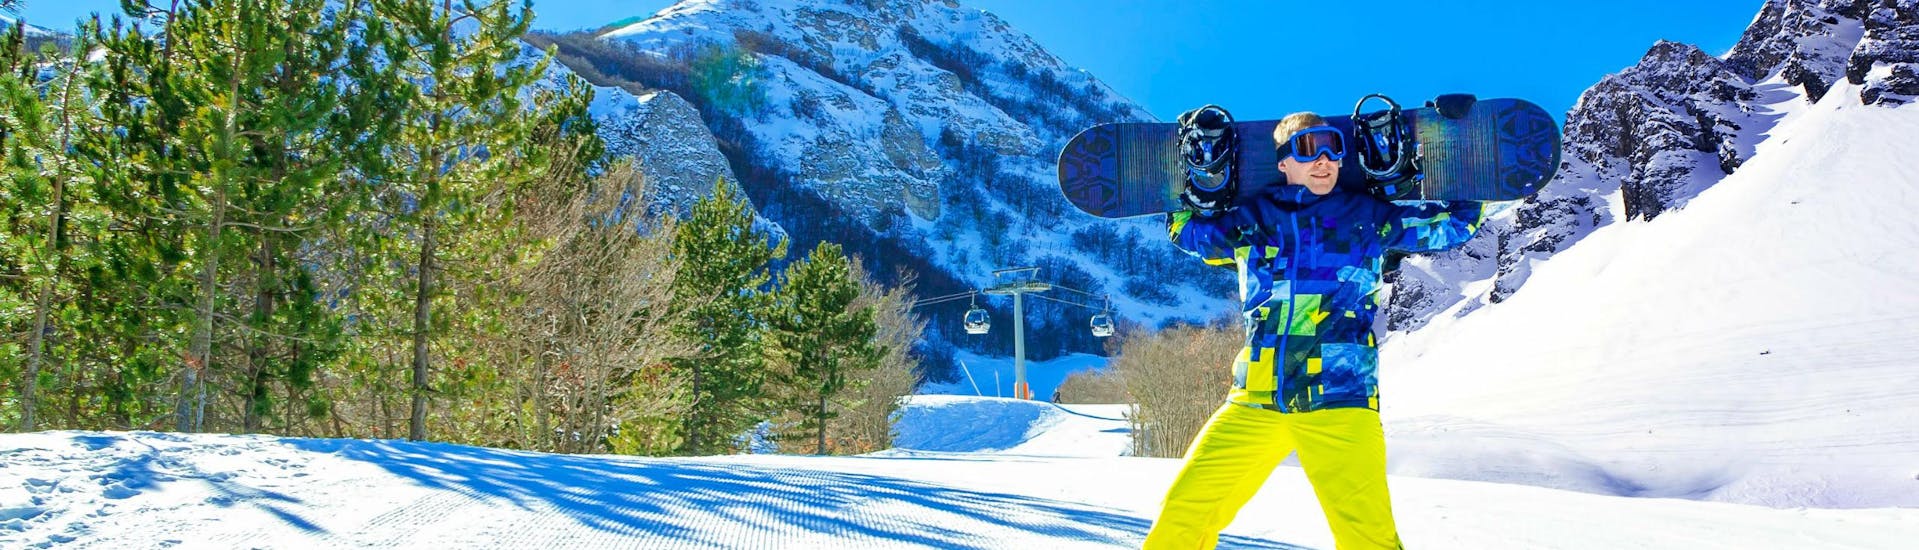 Uno snowboarder sta sorridendo alla fotocamera su una pista soleggiata del comprensorio sciistico di Campo Felice, dove è possibile scegliere tra un'ampia gamma di corsi di sci e snowboard offerti dalle scuole di sci locali.